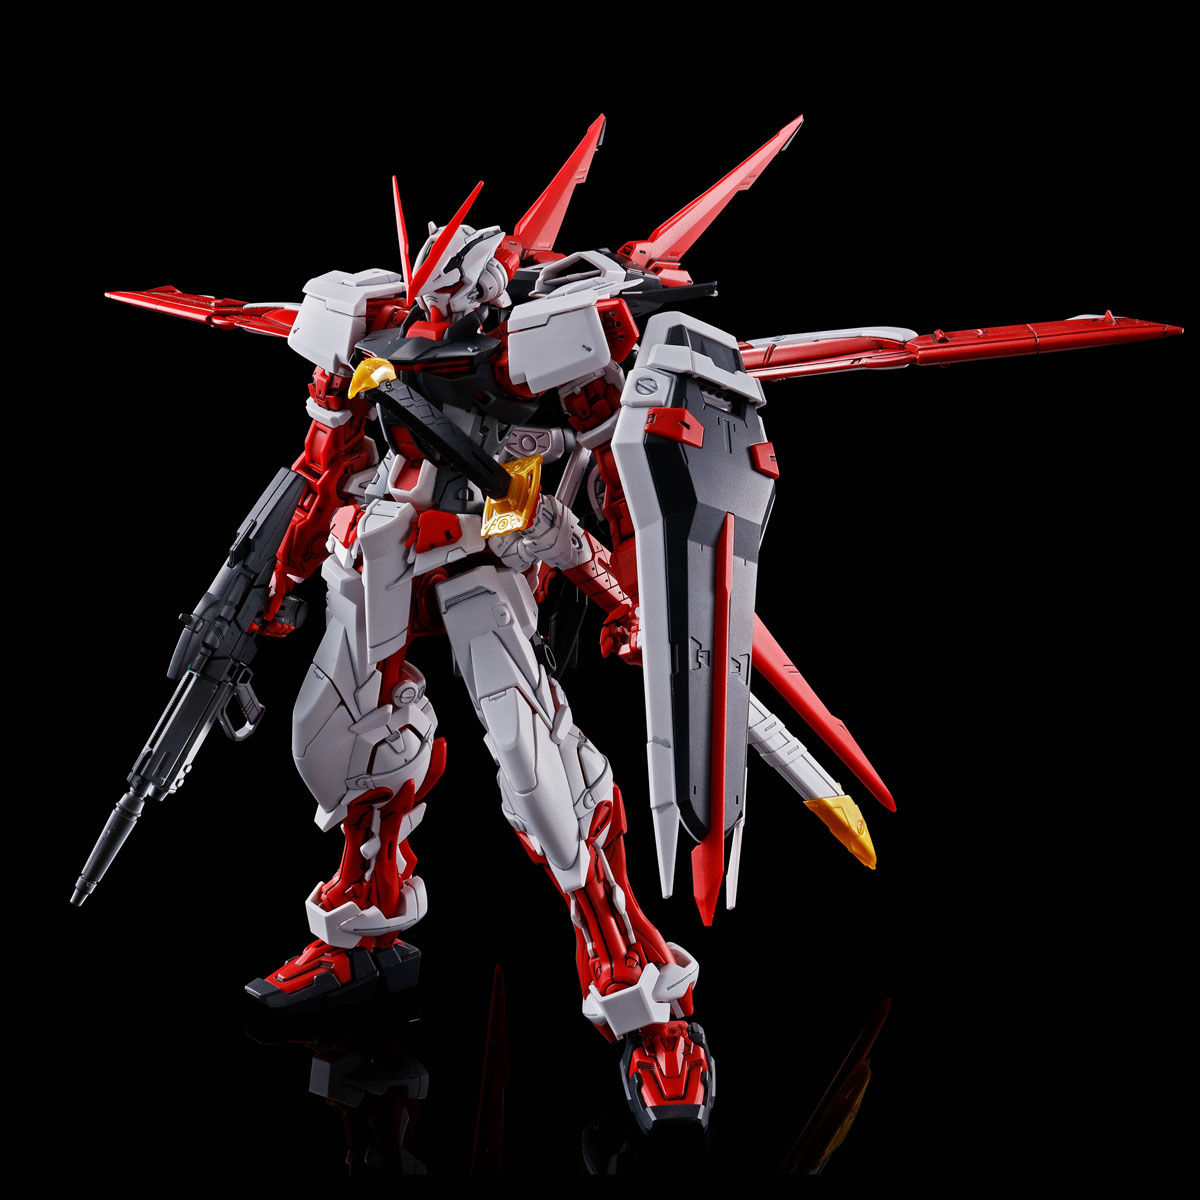 MBF-P02 ガンダムアストレイ レッドフレーム フライト・ユニット [Gundam Astray Red Frame with